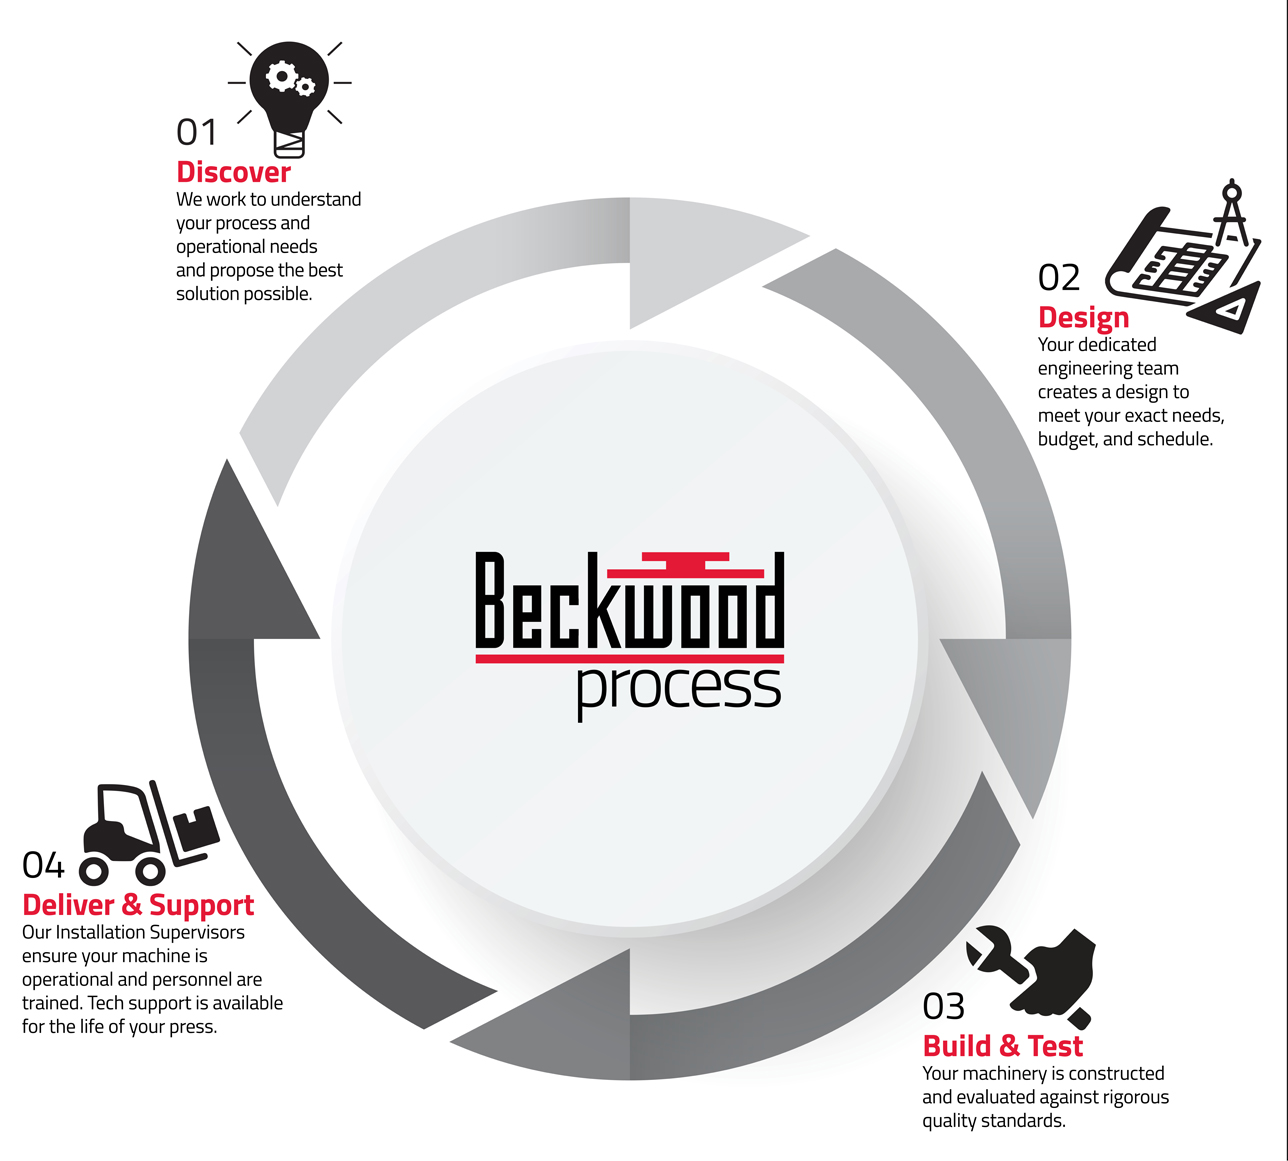 Beckwood process-sm